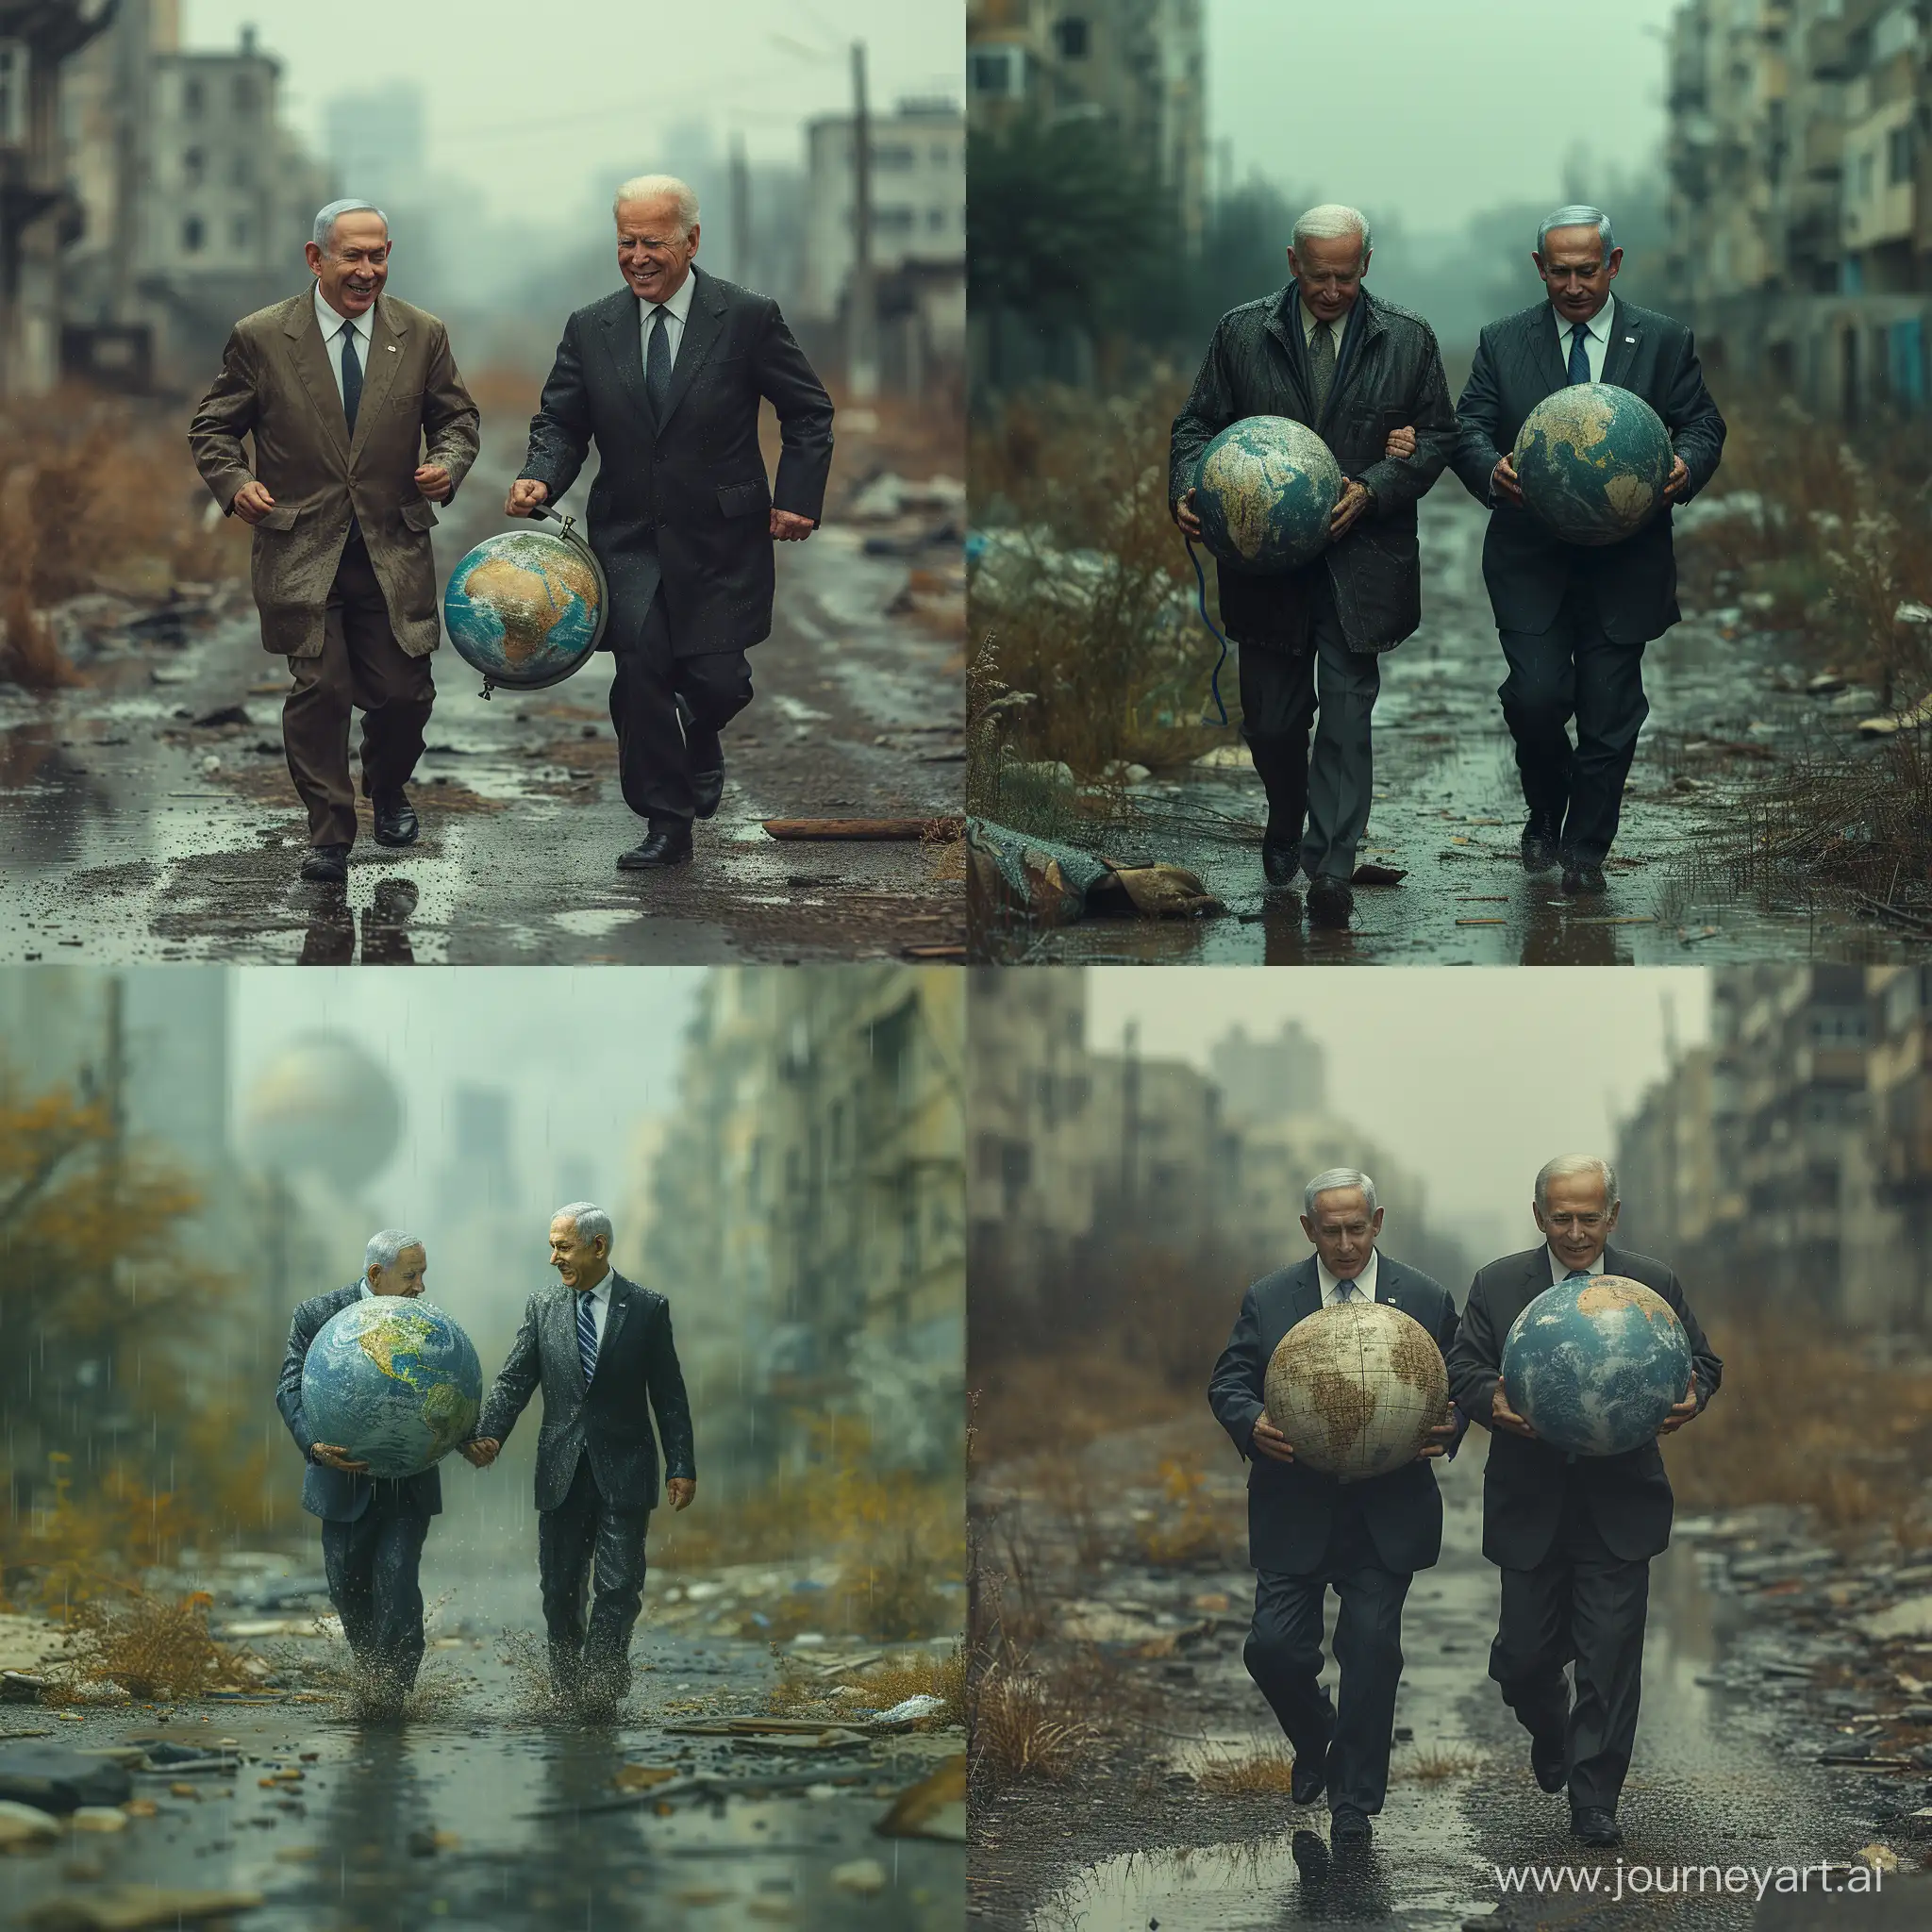 Joe-Biden-and-Benjamin-Netanyahu-Joyfully-Carrying-Globe-in-Abandoned-City-Rain